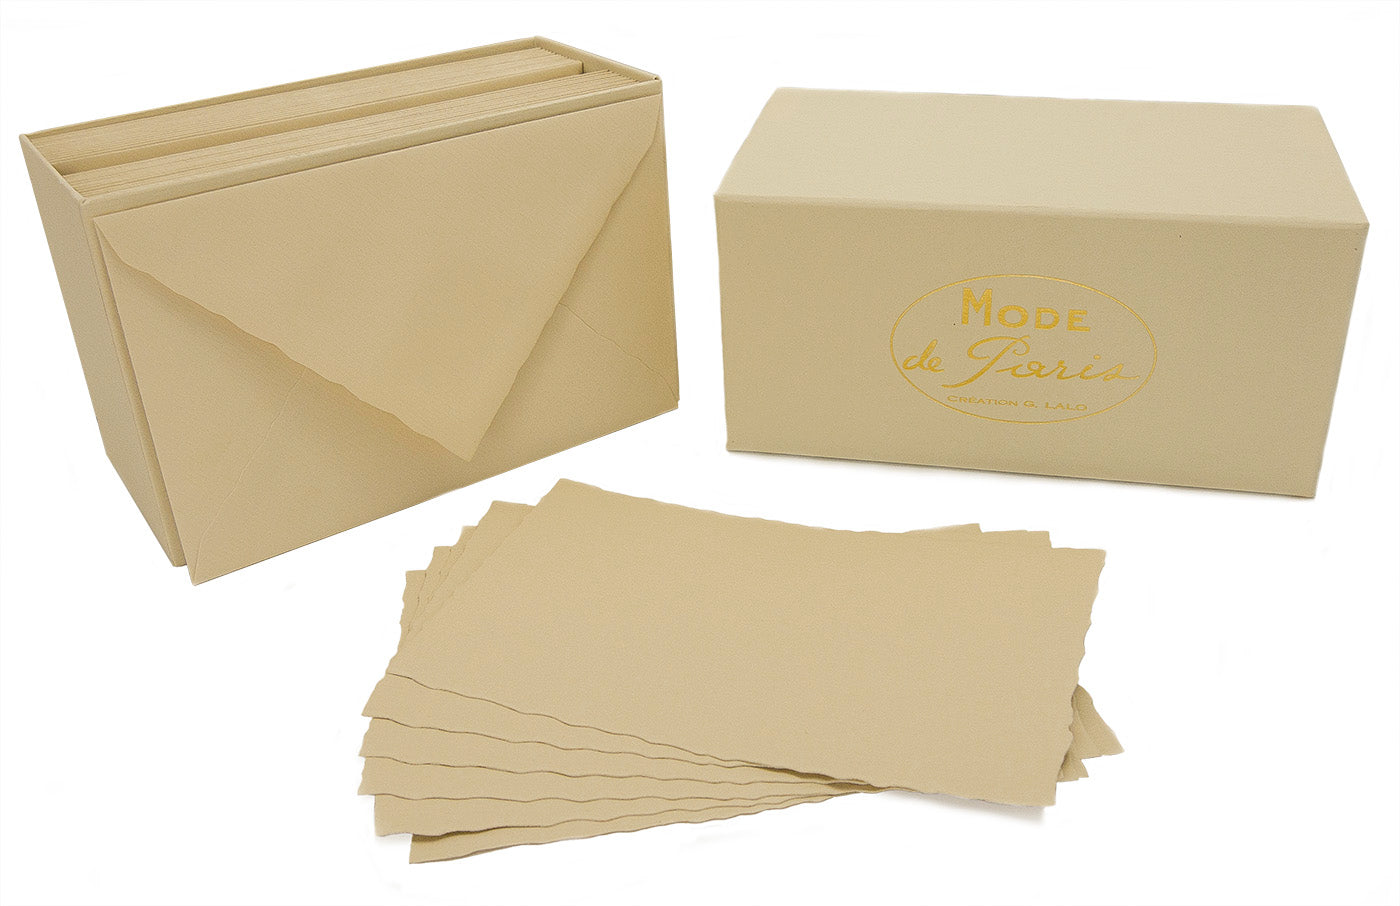 G. Lalo Mode de Paris Cards & Envelopes